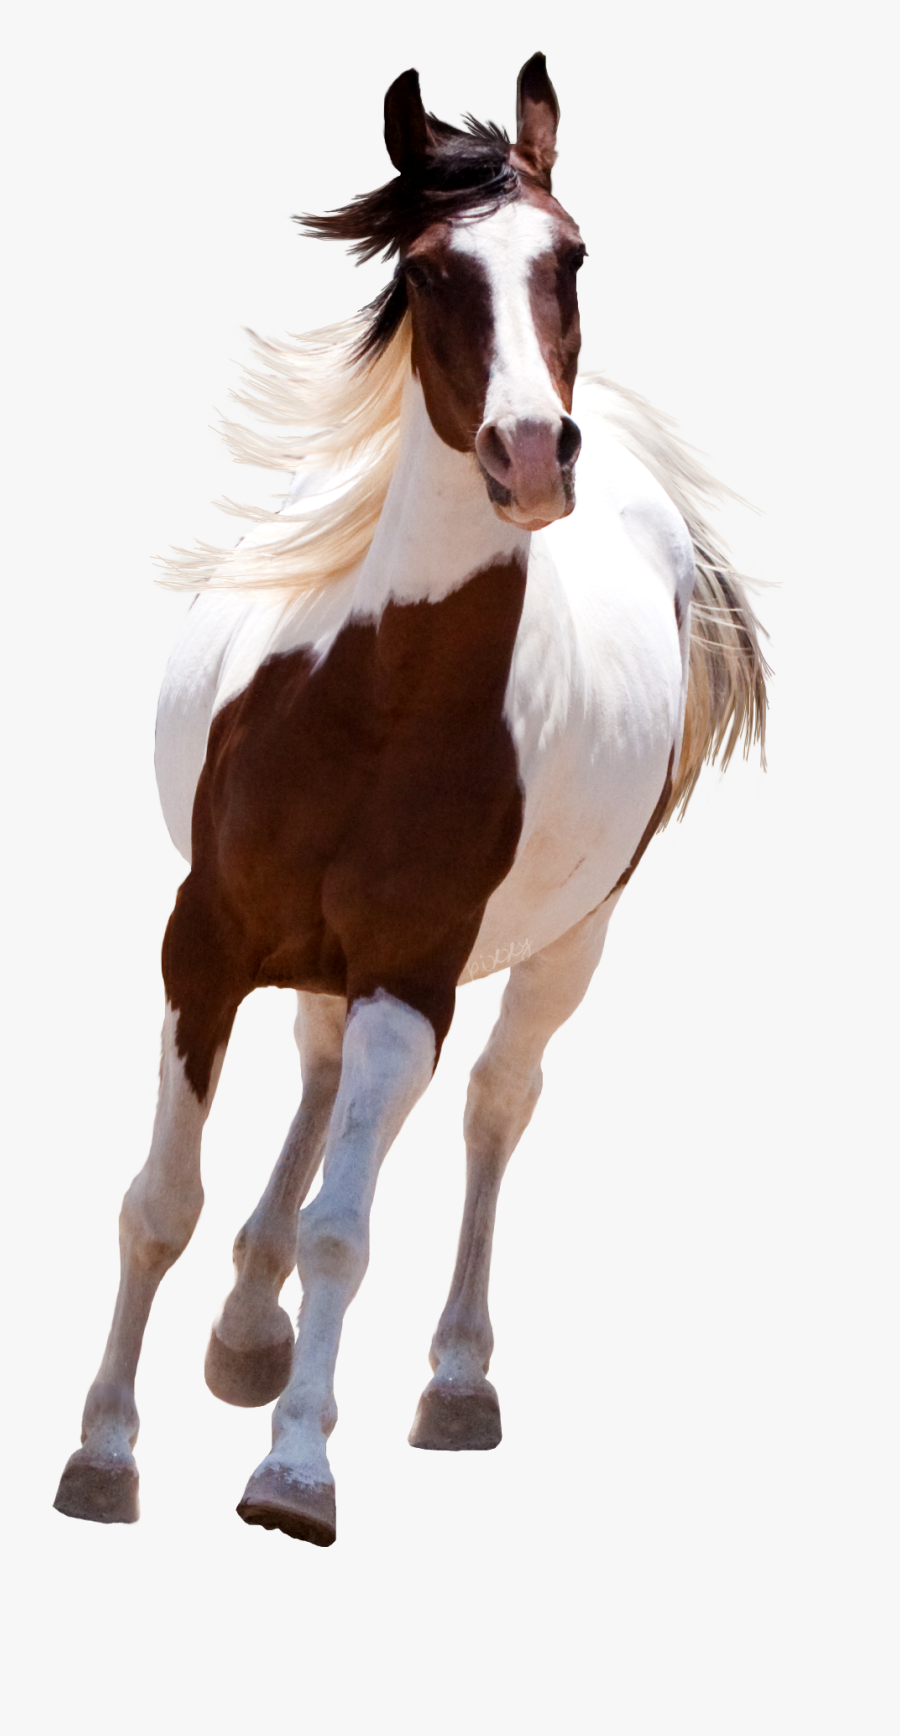 Running Png R No - Picsart Horse Png Hd , Free Transparent Clipart